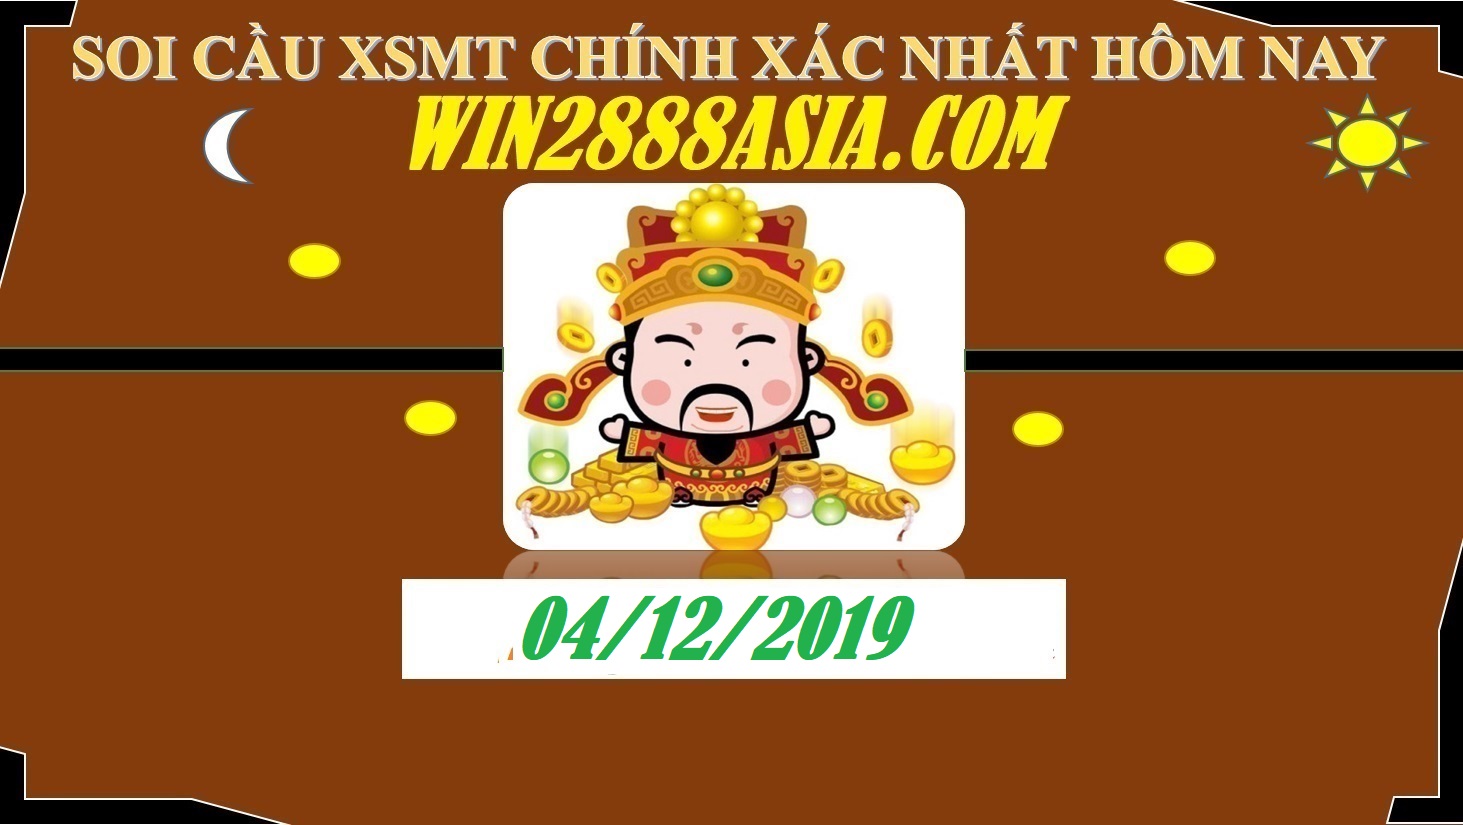 Soi cầu XSMT 4-12-2019 Win2888